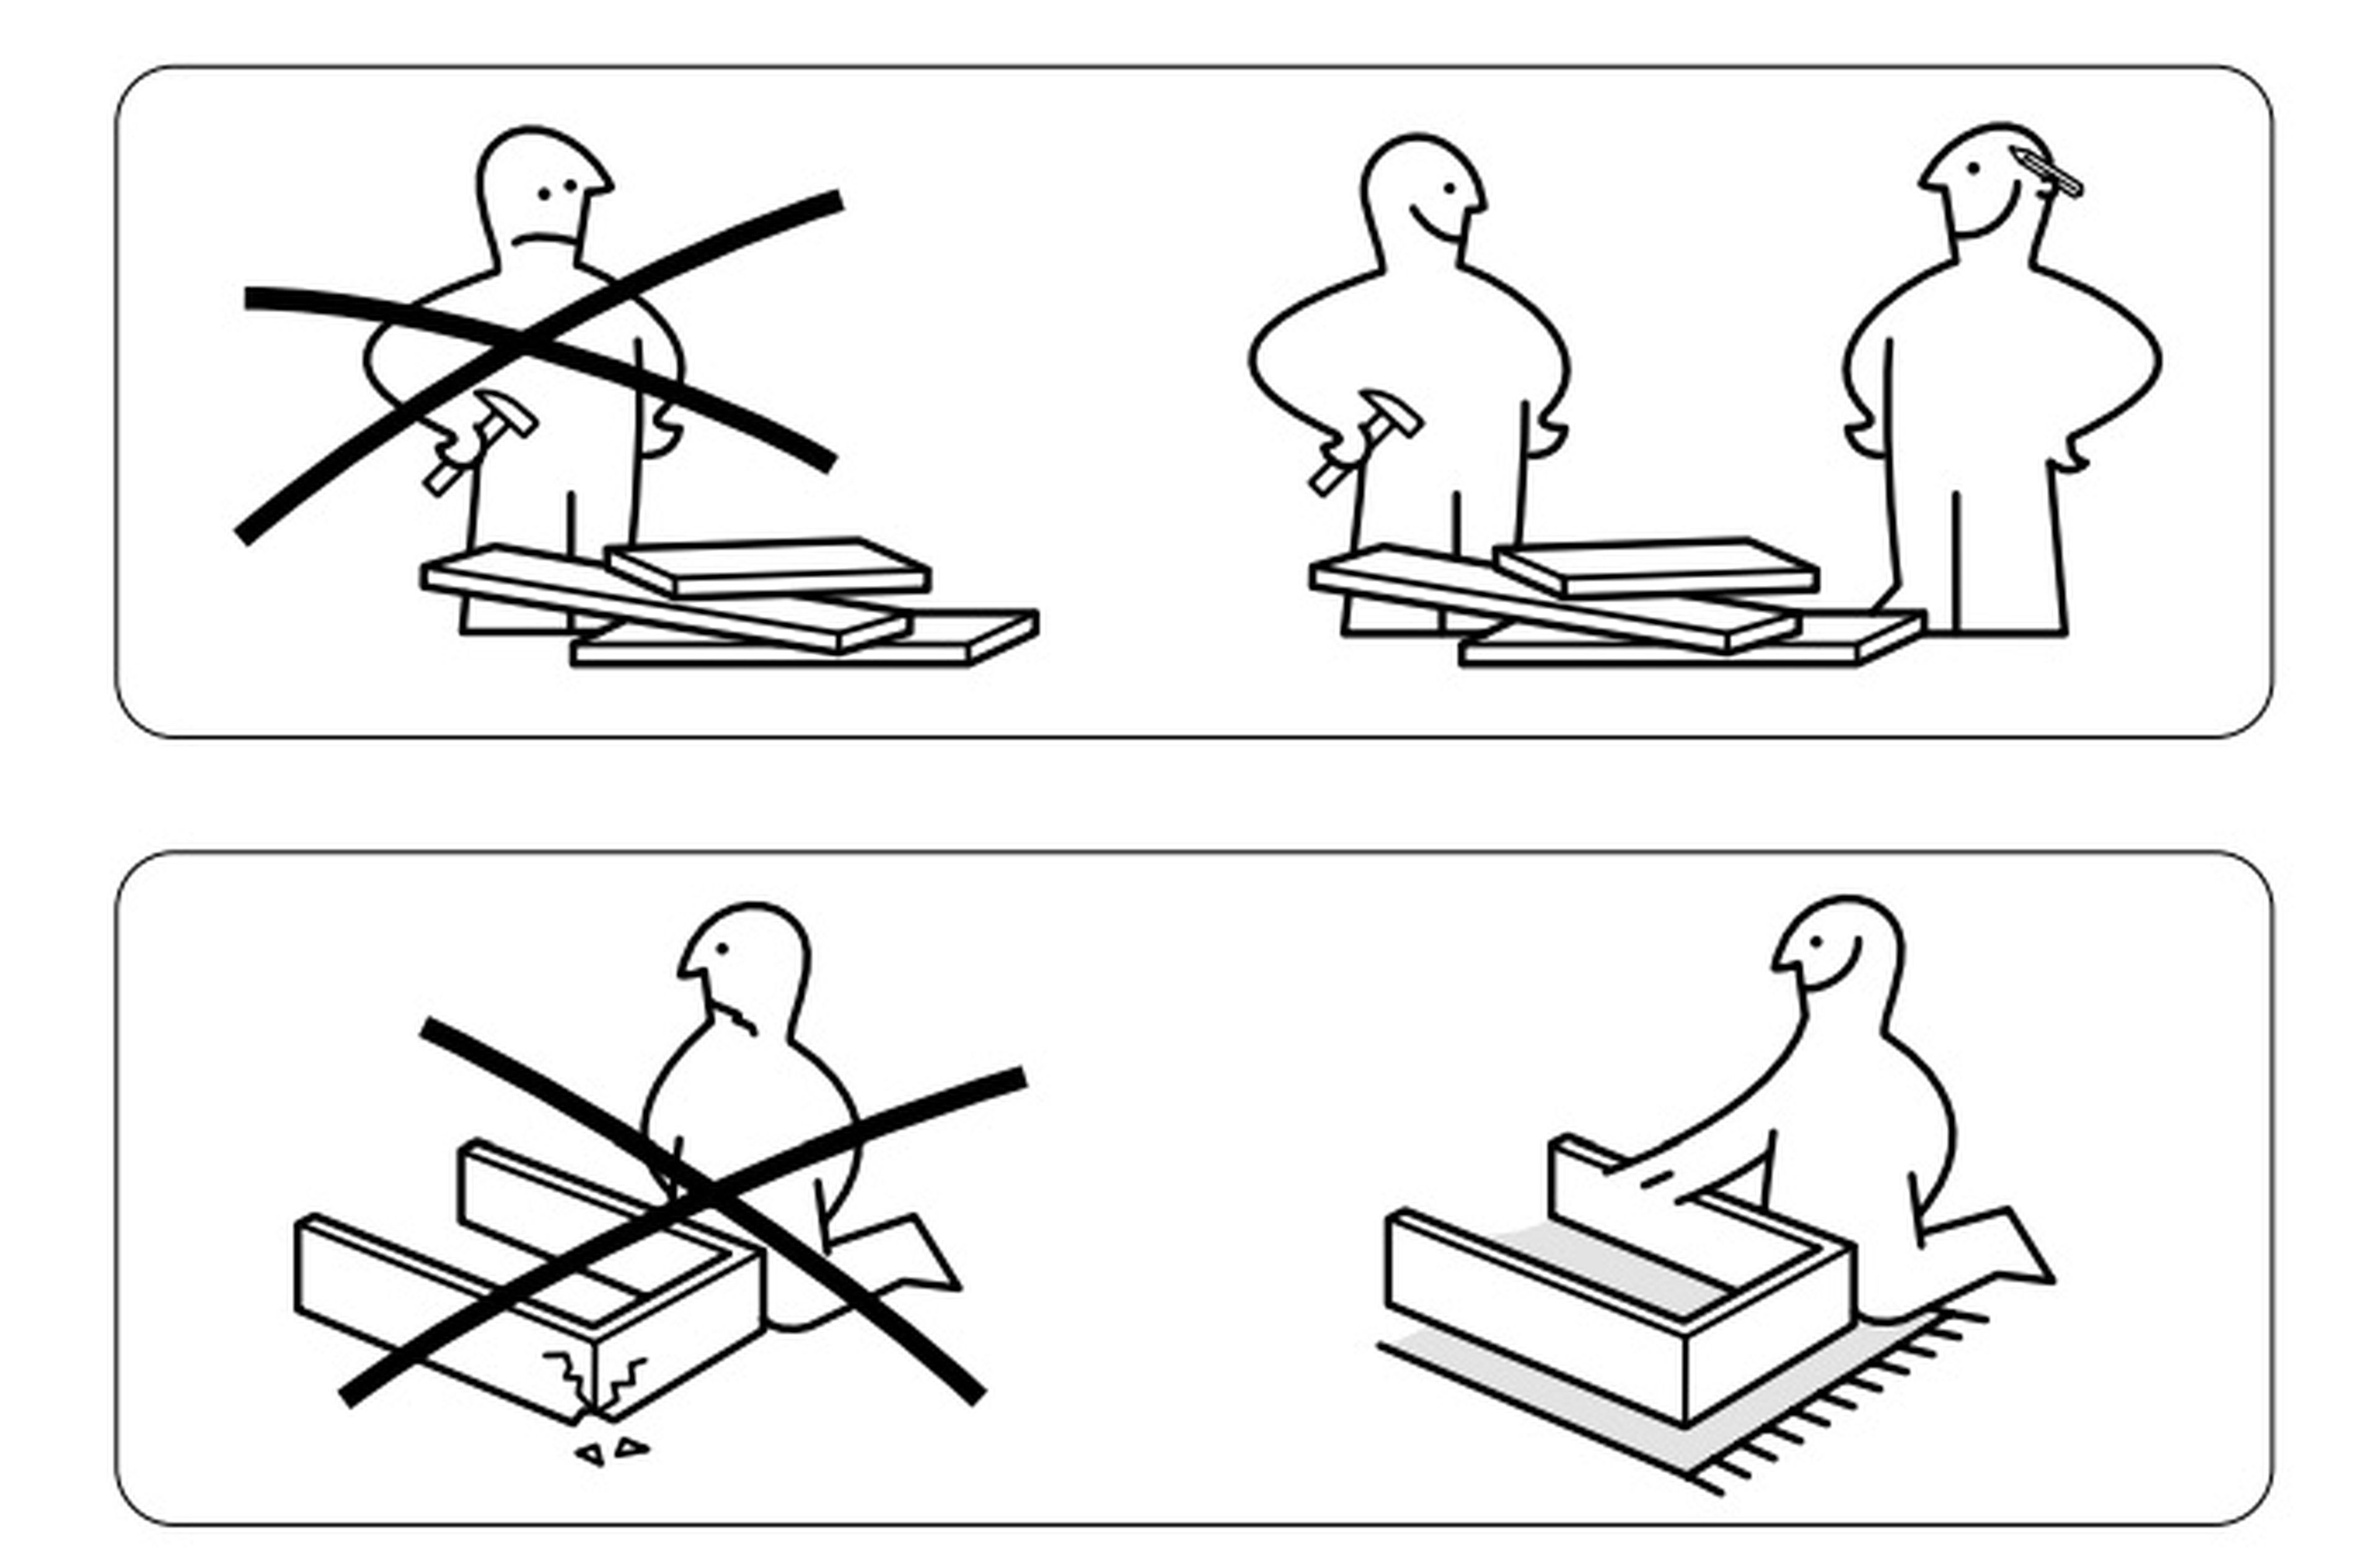 Desmontaje de muebles de Ikea